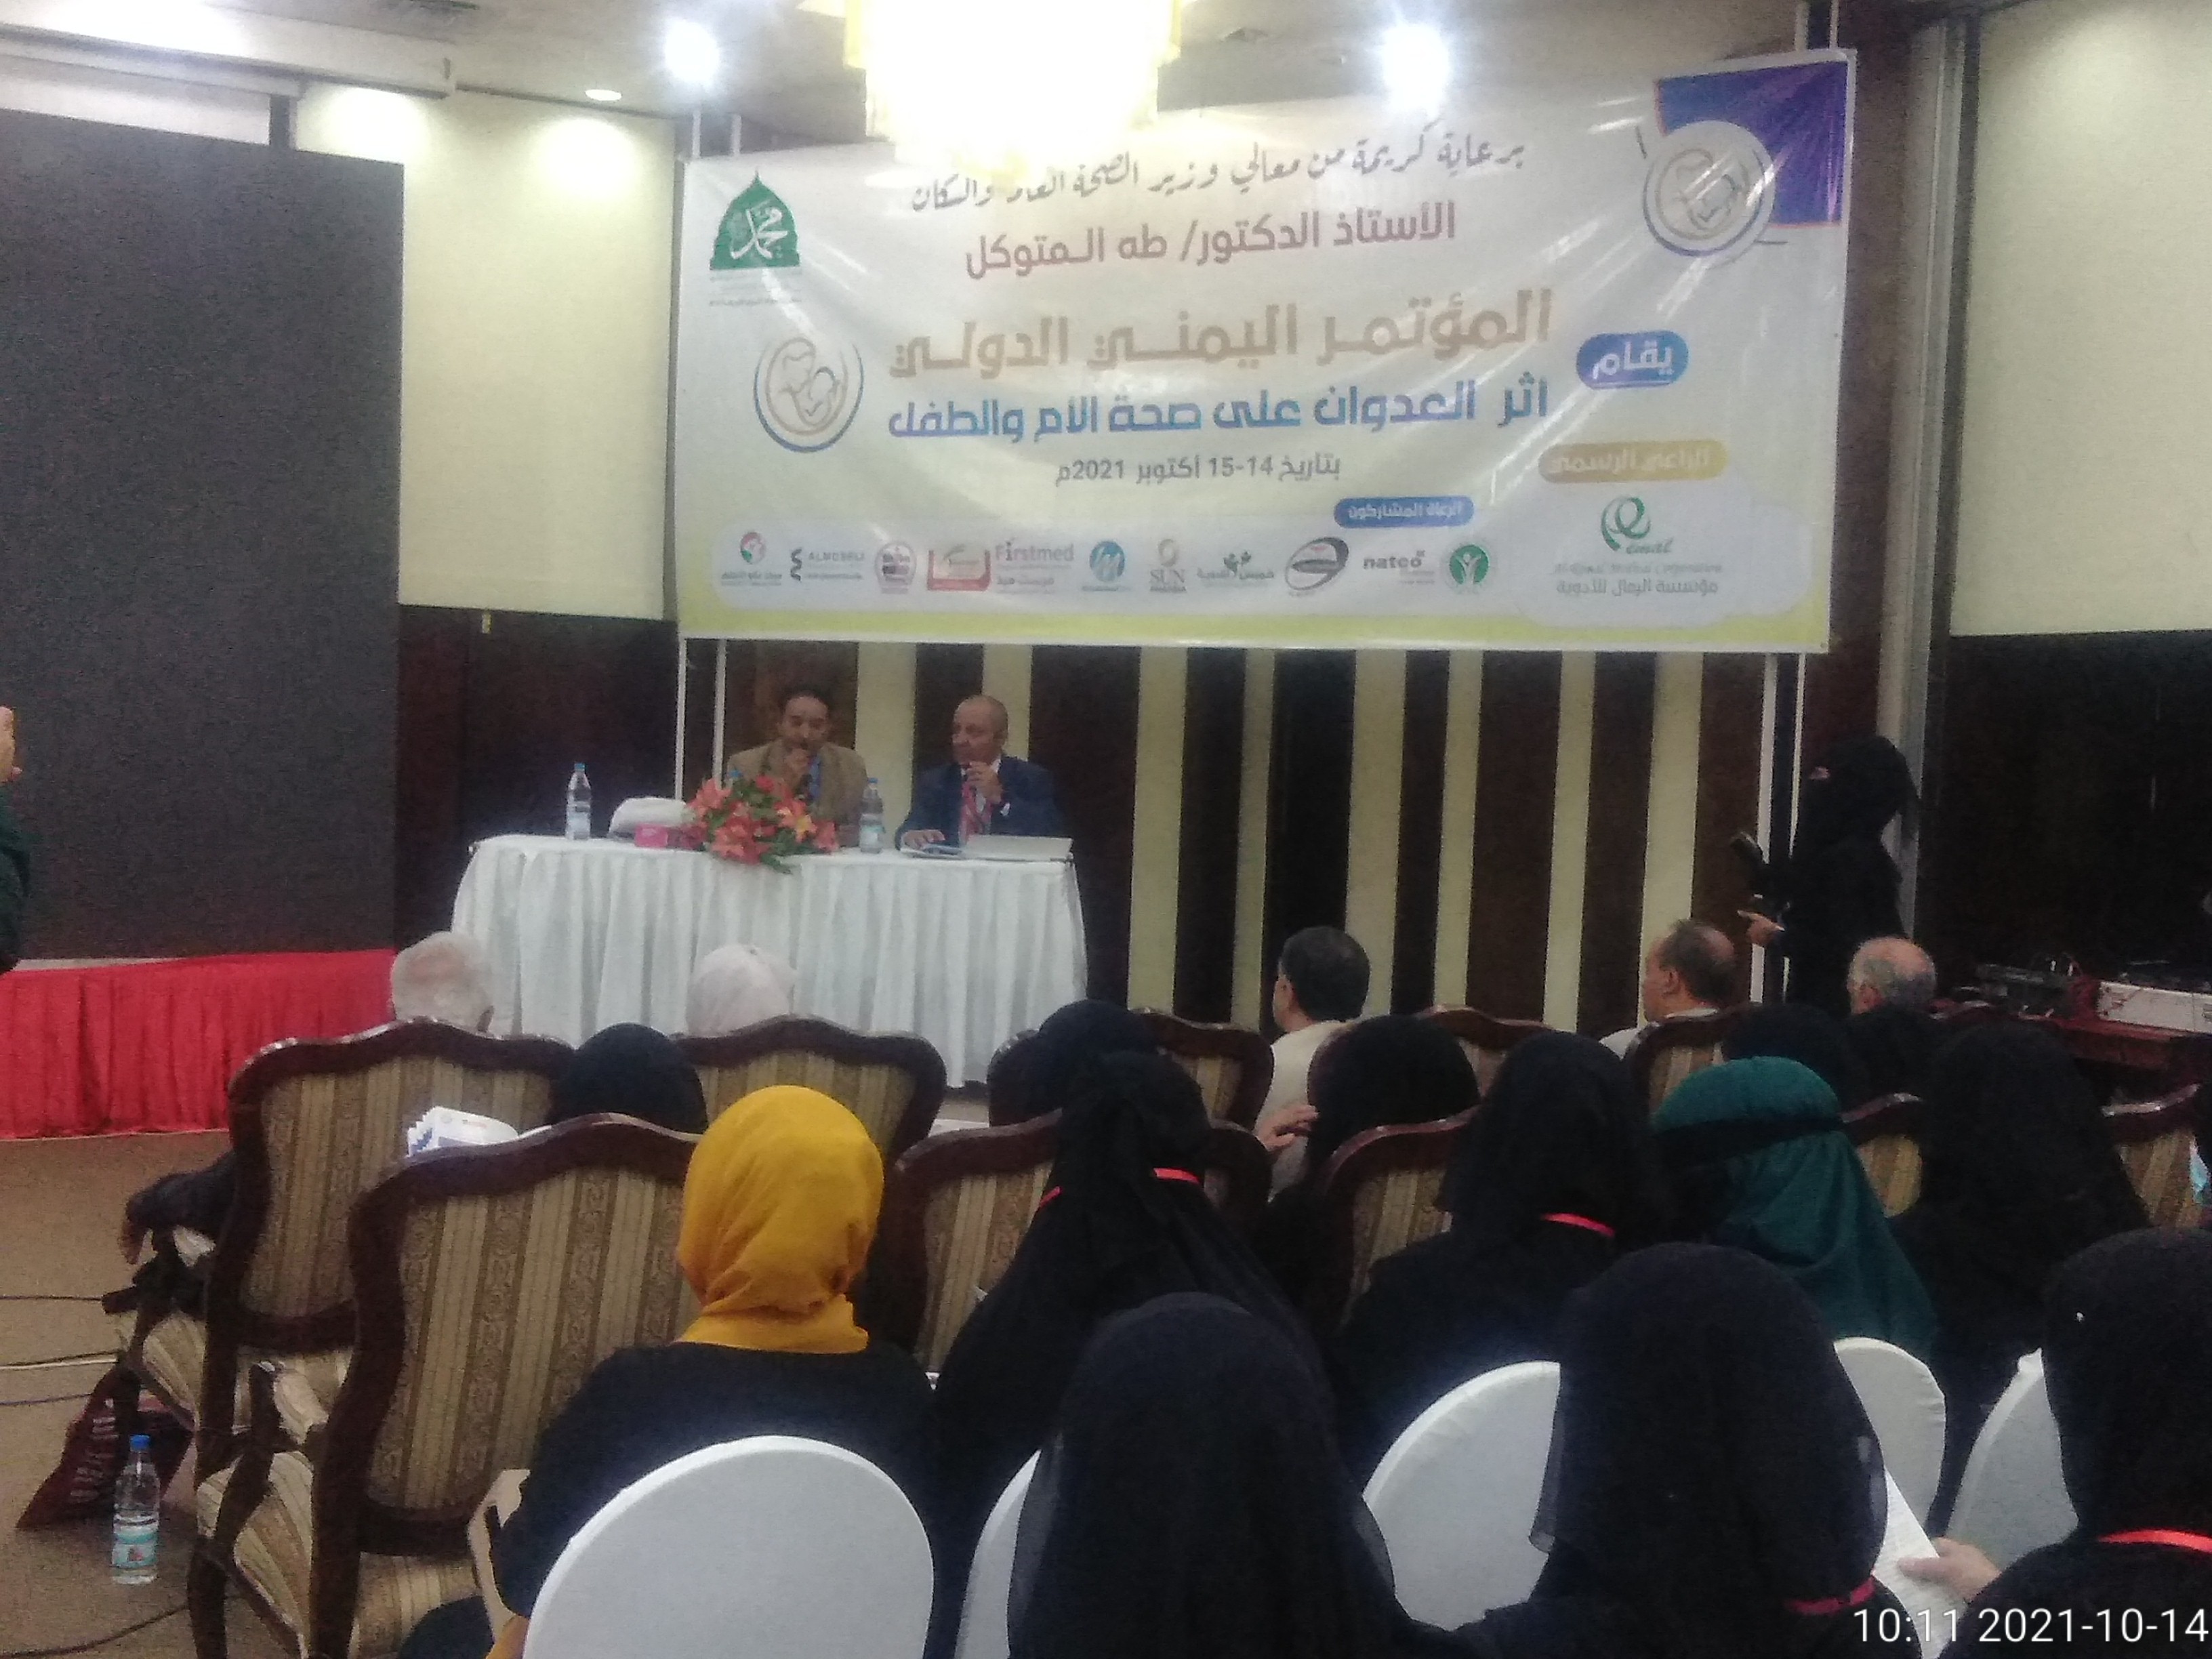 Beginn der Konferenz „Die Auswirkungen von Aggression auf die Gesundheit von Müttern und Kind“ in Sanaa